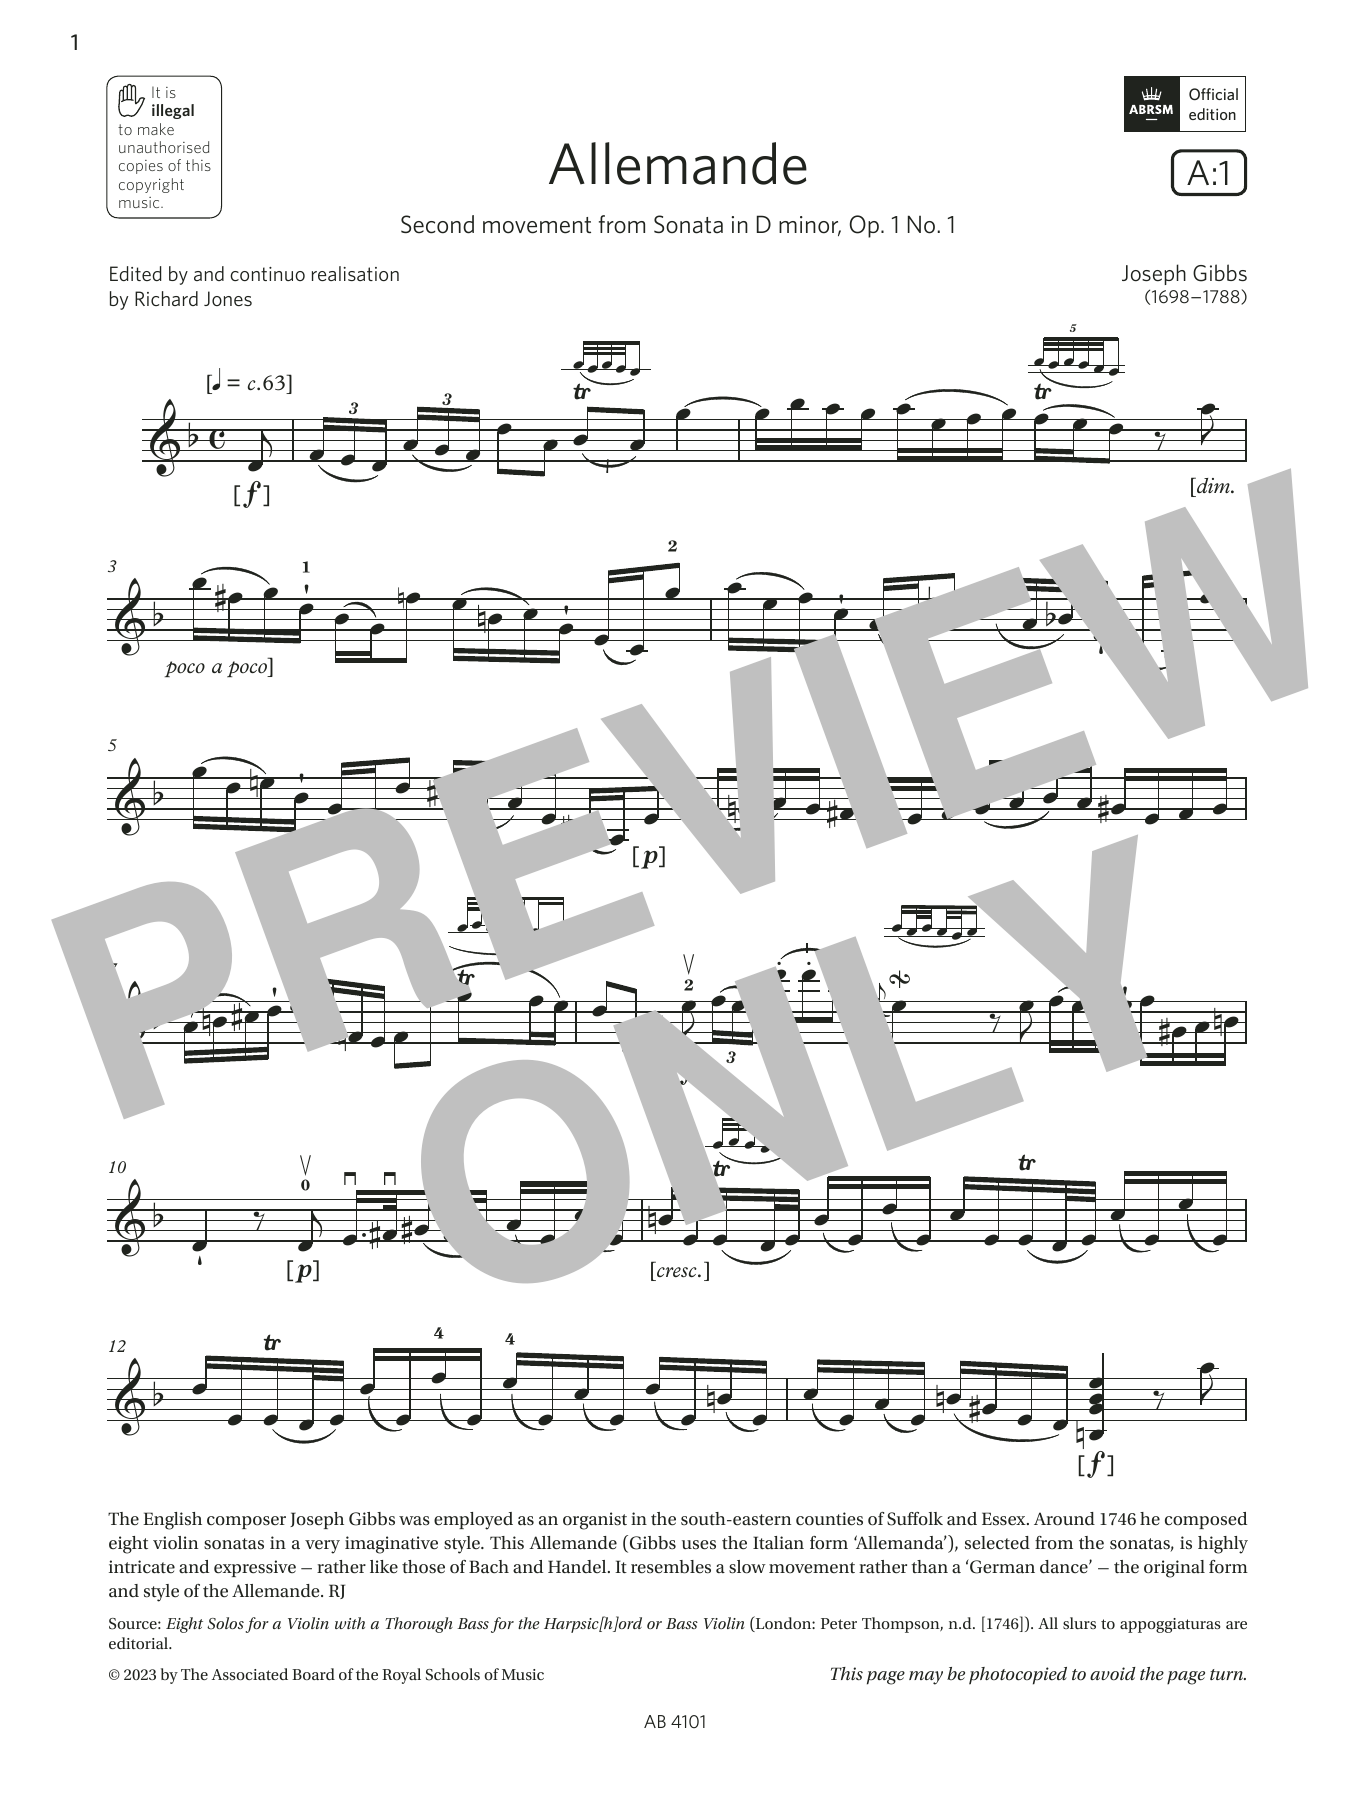 Download Joseph Gibbs Allemande (Grade 7, A1, from the ABRSM Sheet Music